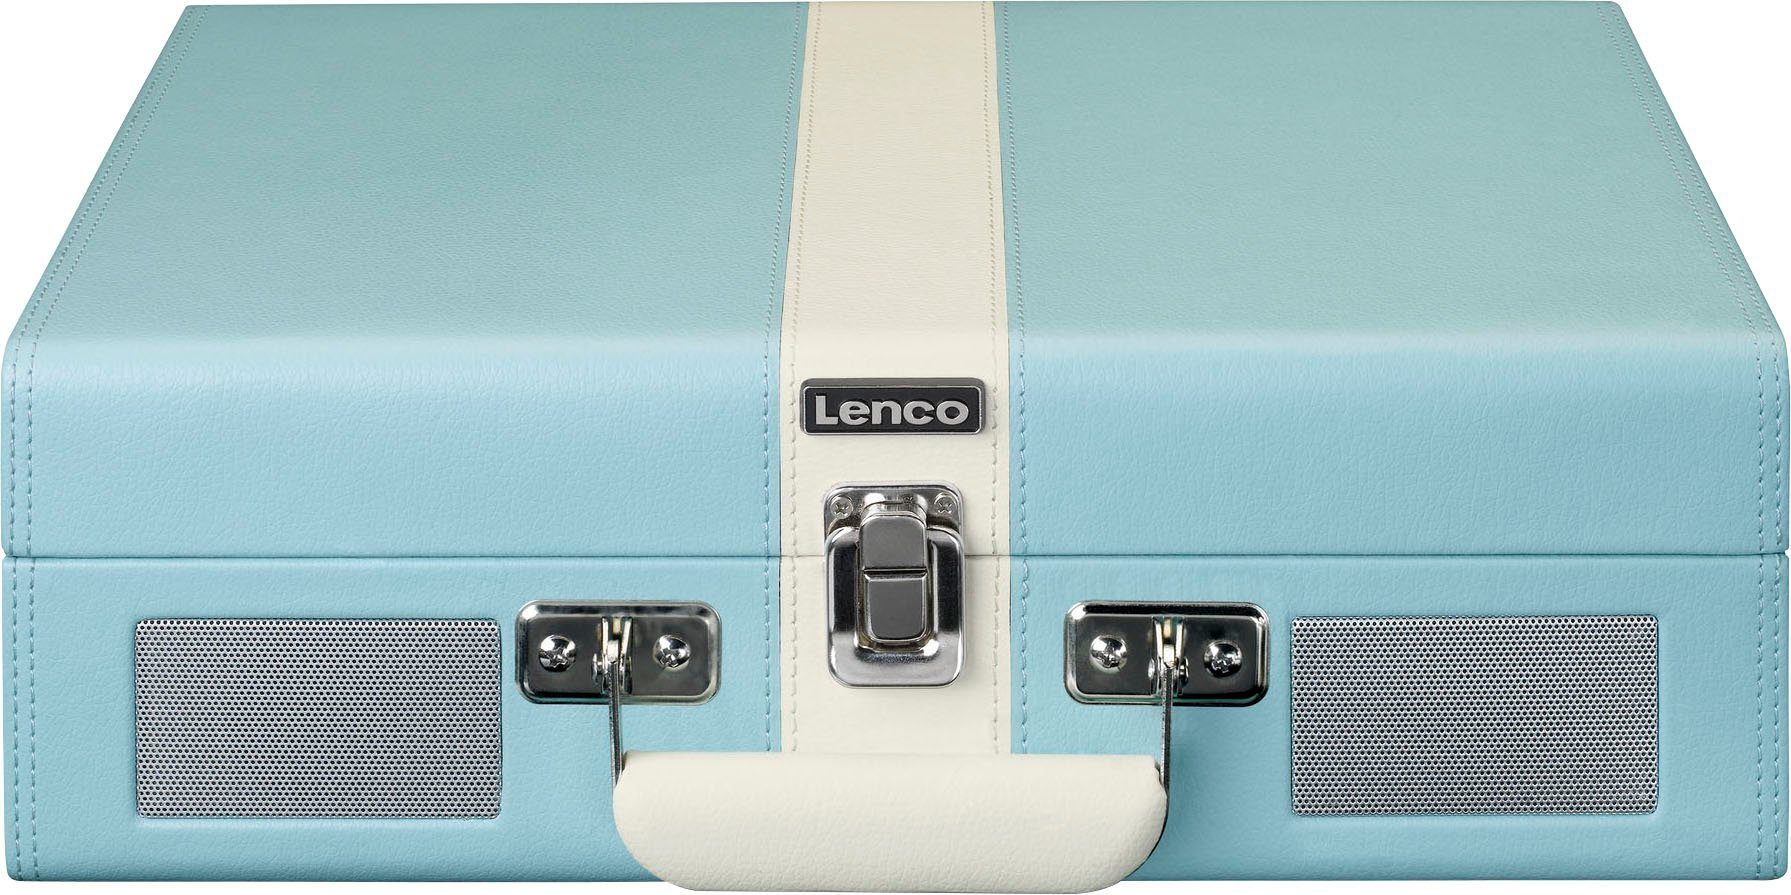 Lsp. eingebauten Koffer-Plattenspieler BT (Riemenantrieb) mit und Lenco Blau-Weiß Plattenspieler